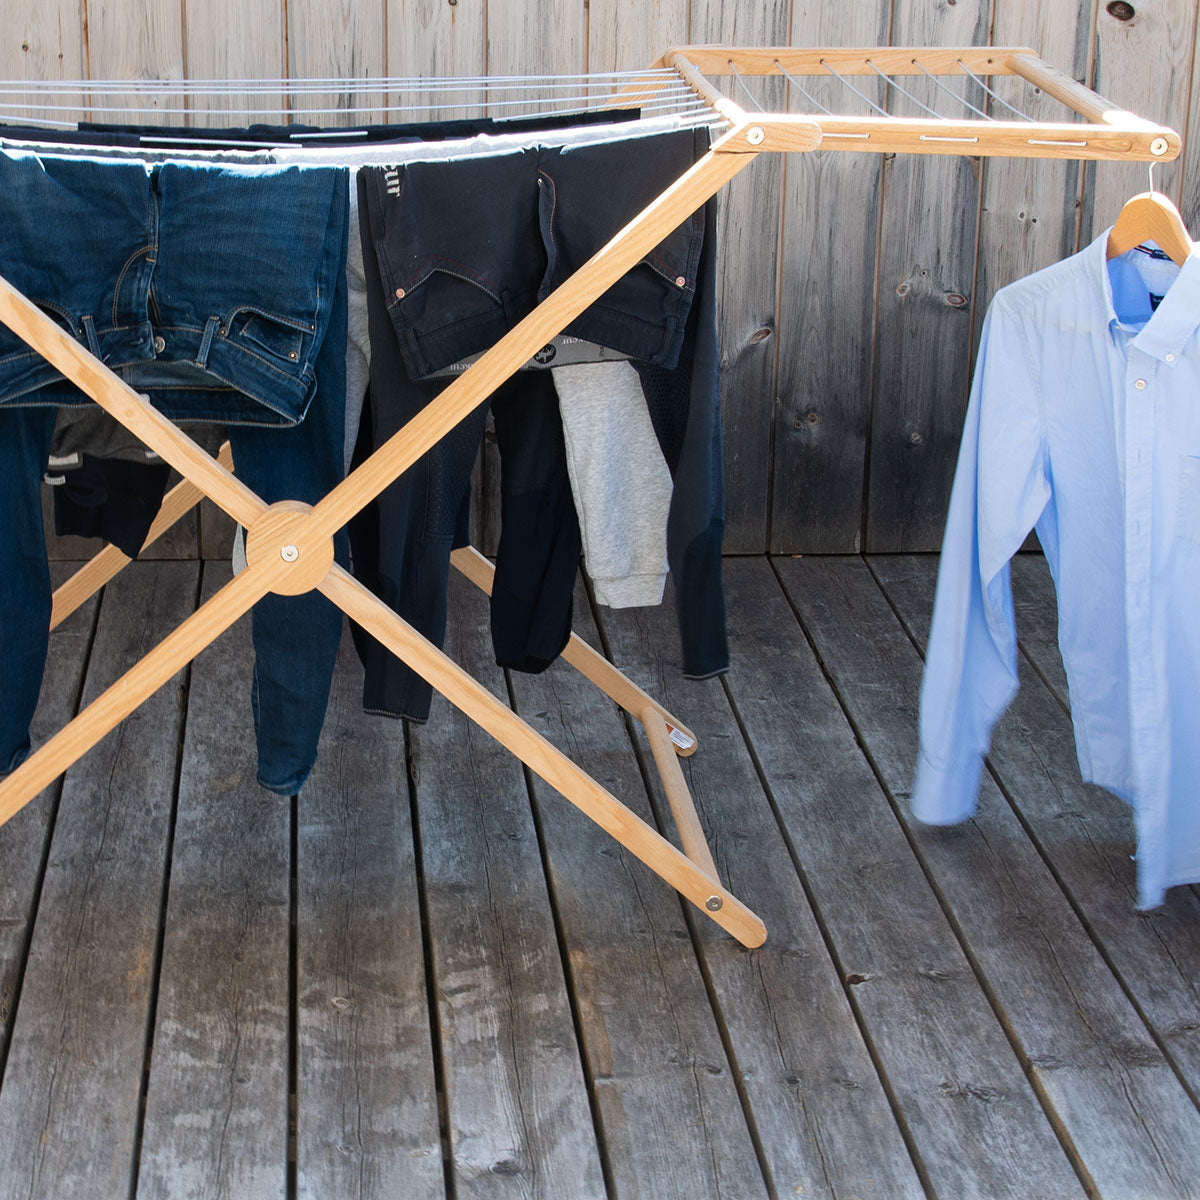 Edler Wäscheständer / Flügelwäscheständer aus Eschenholz | mit Flügeln auch für lange Kleidungsstücke | klappbar | platzsparend | Handgemacht in Deutschland